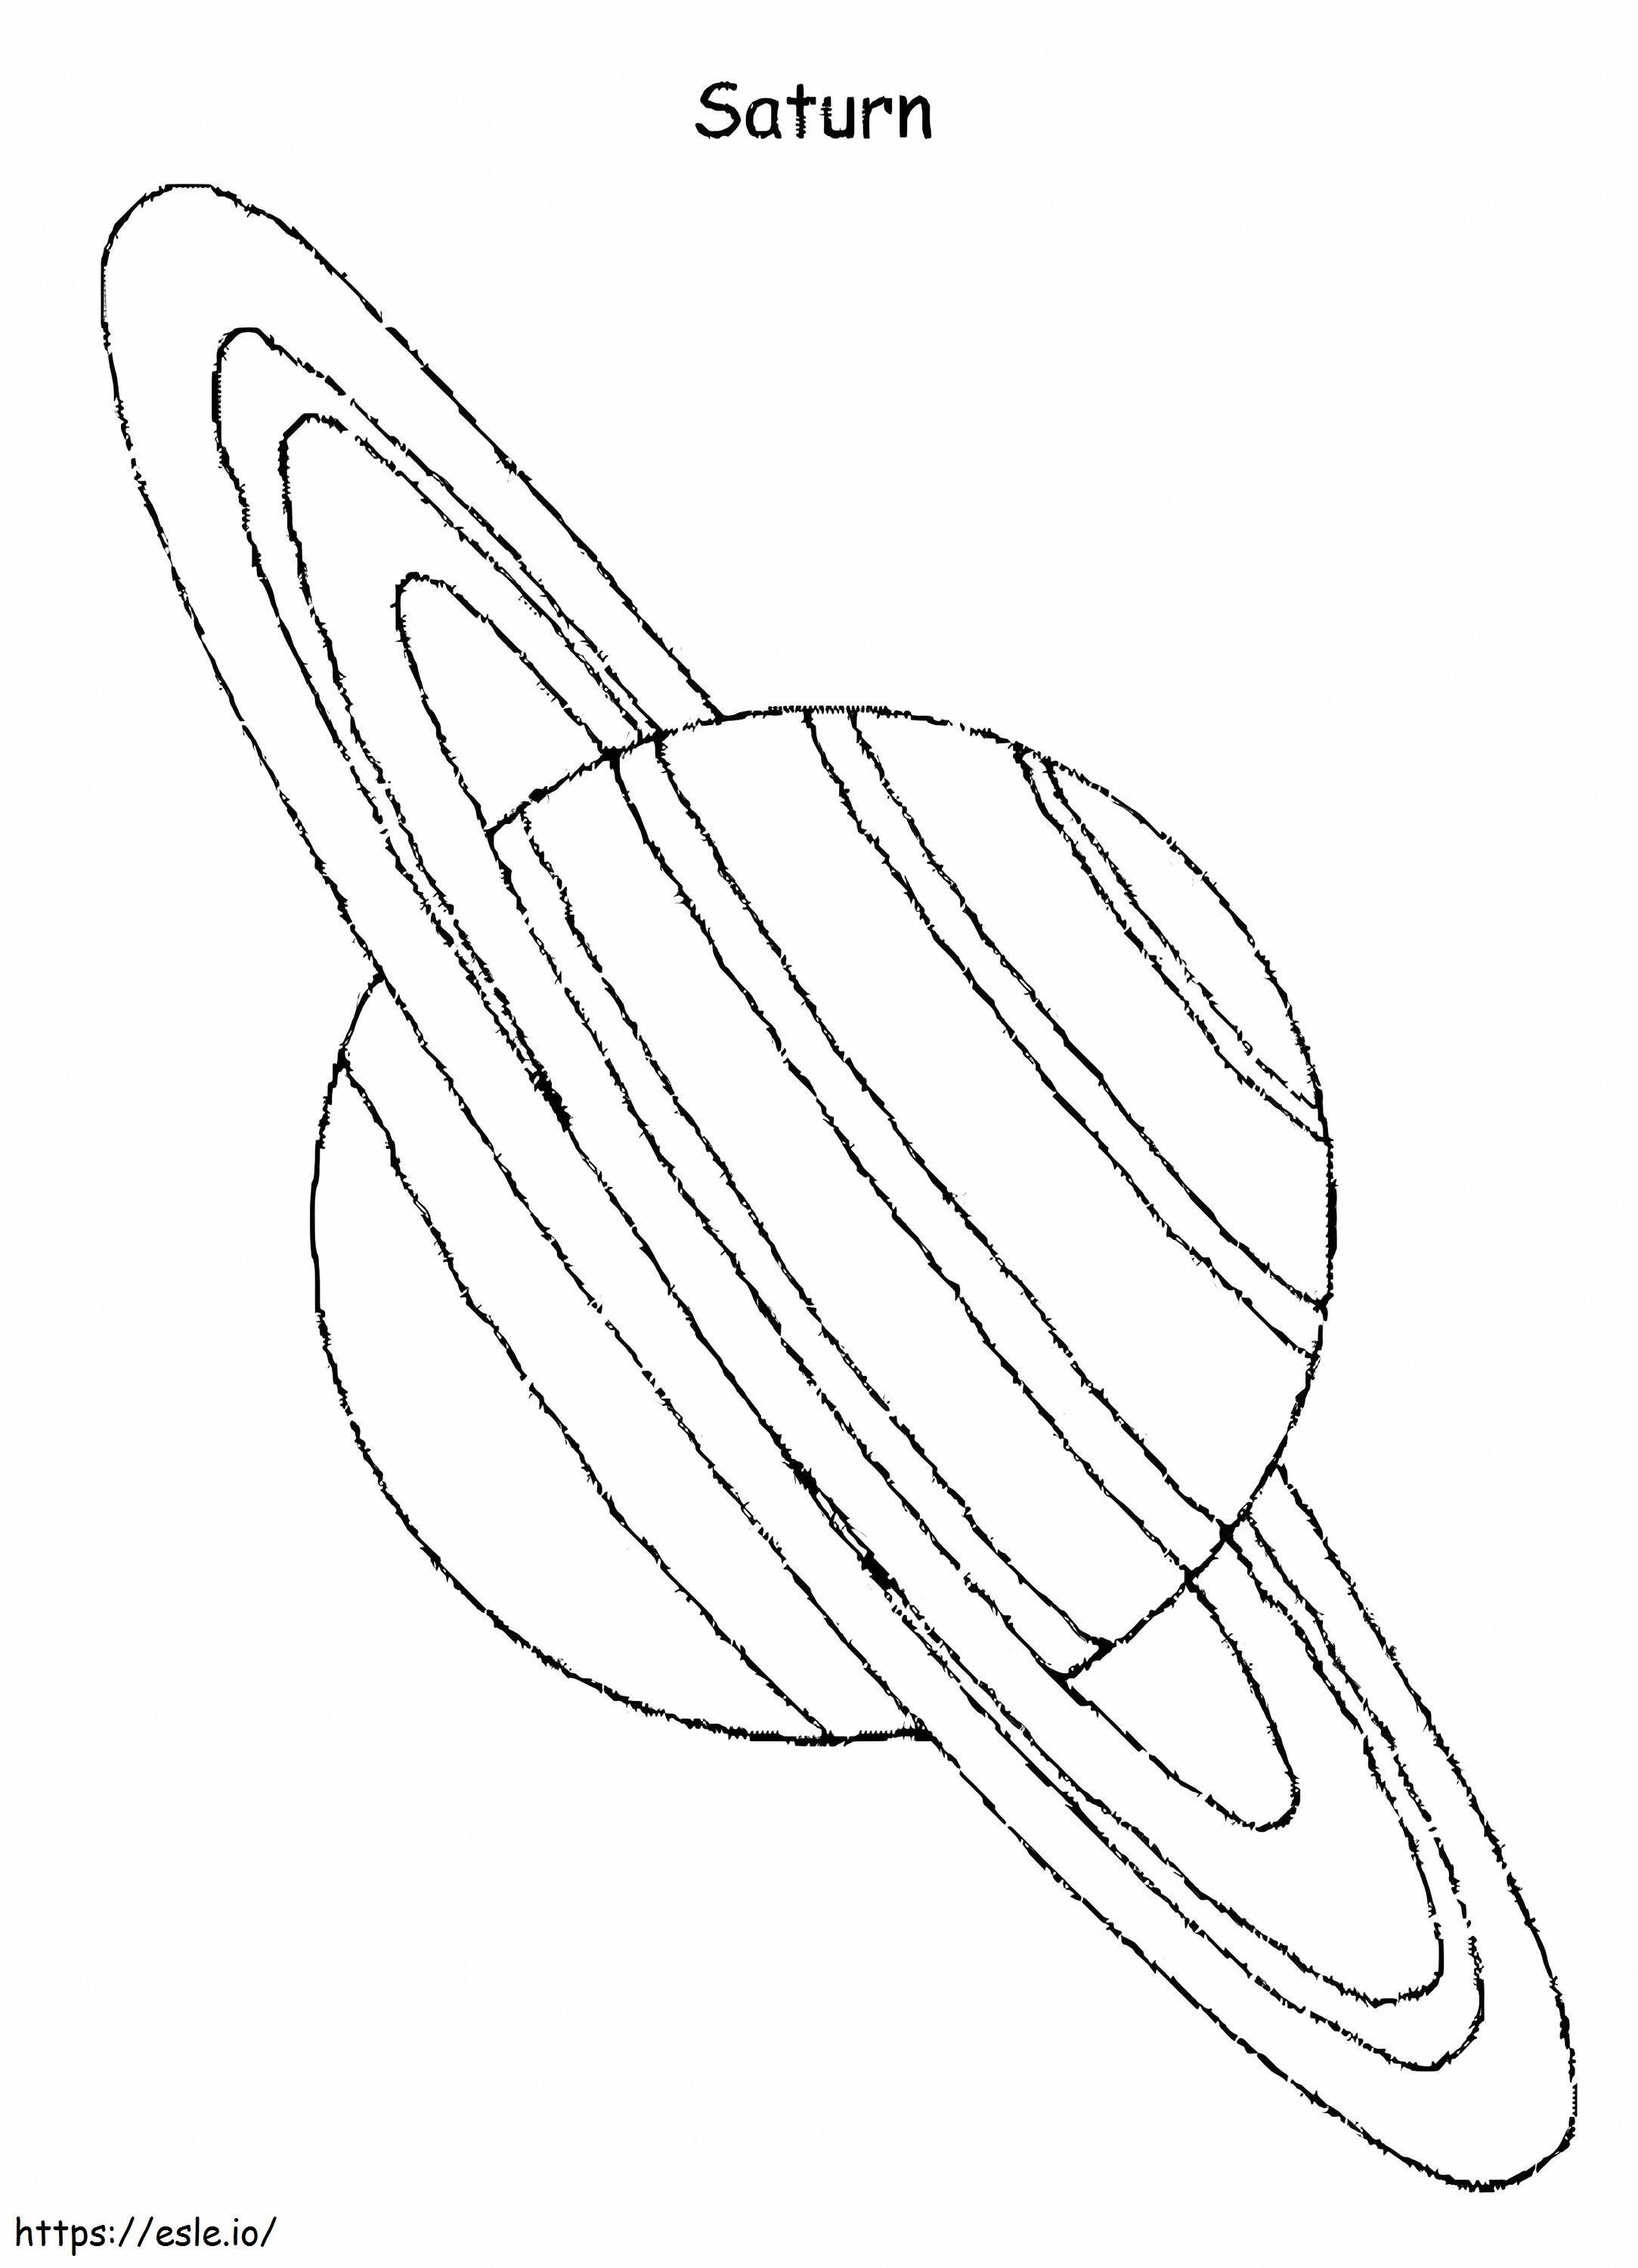 Pianeta Saturno 1 da colorare